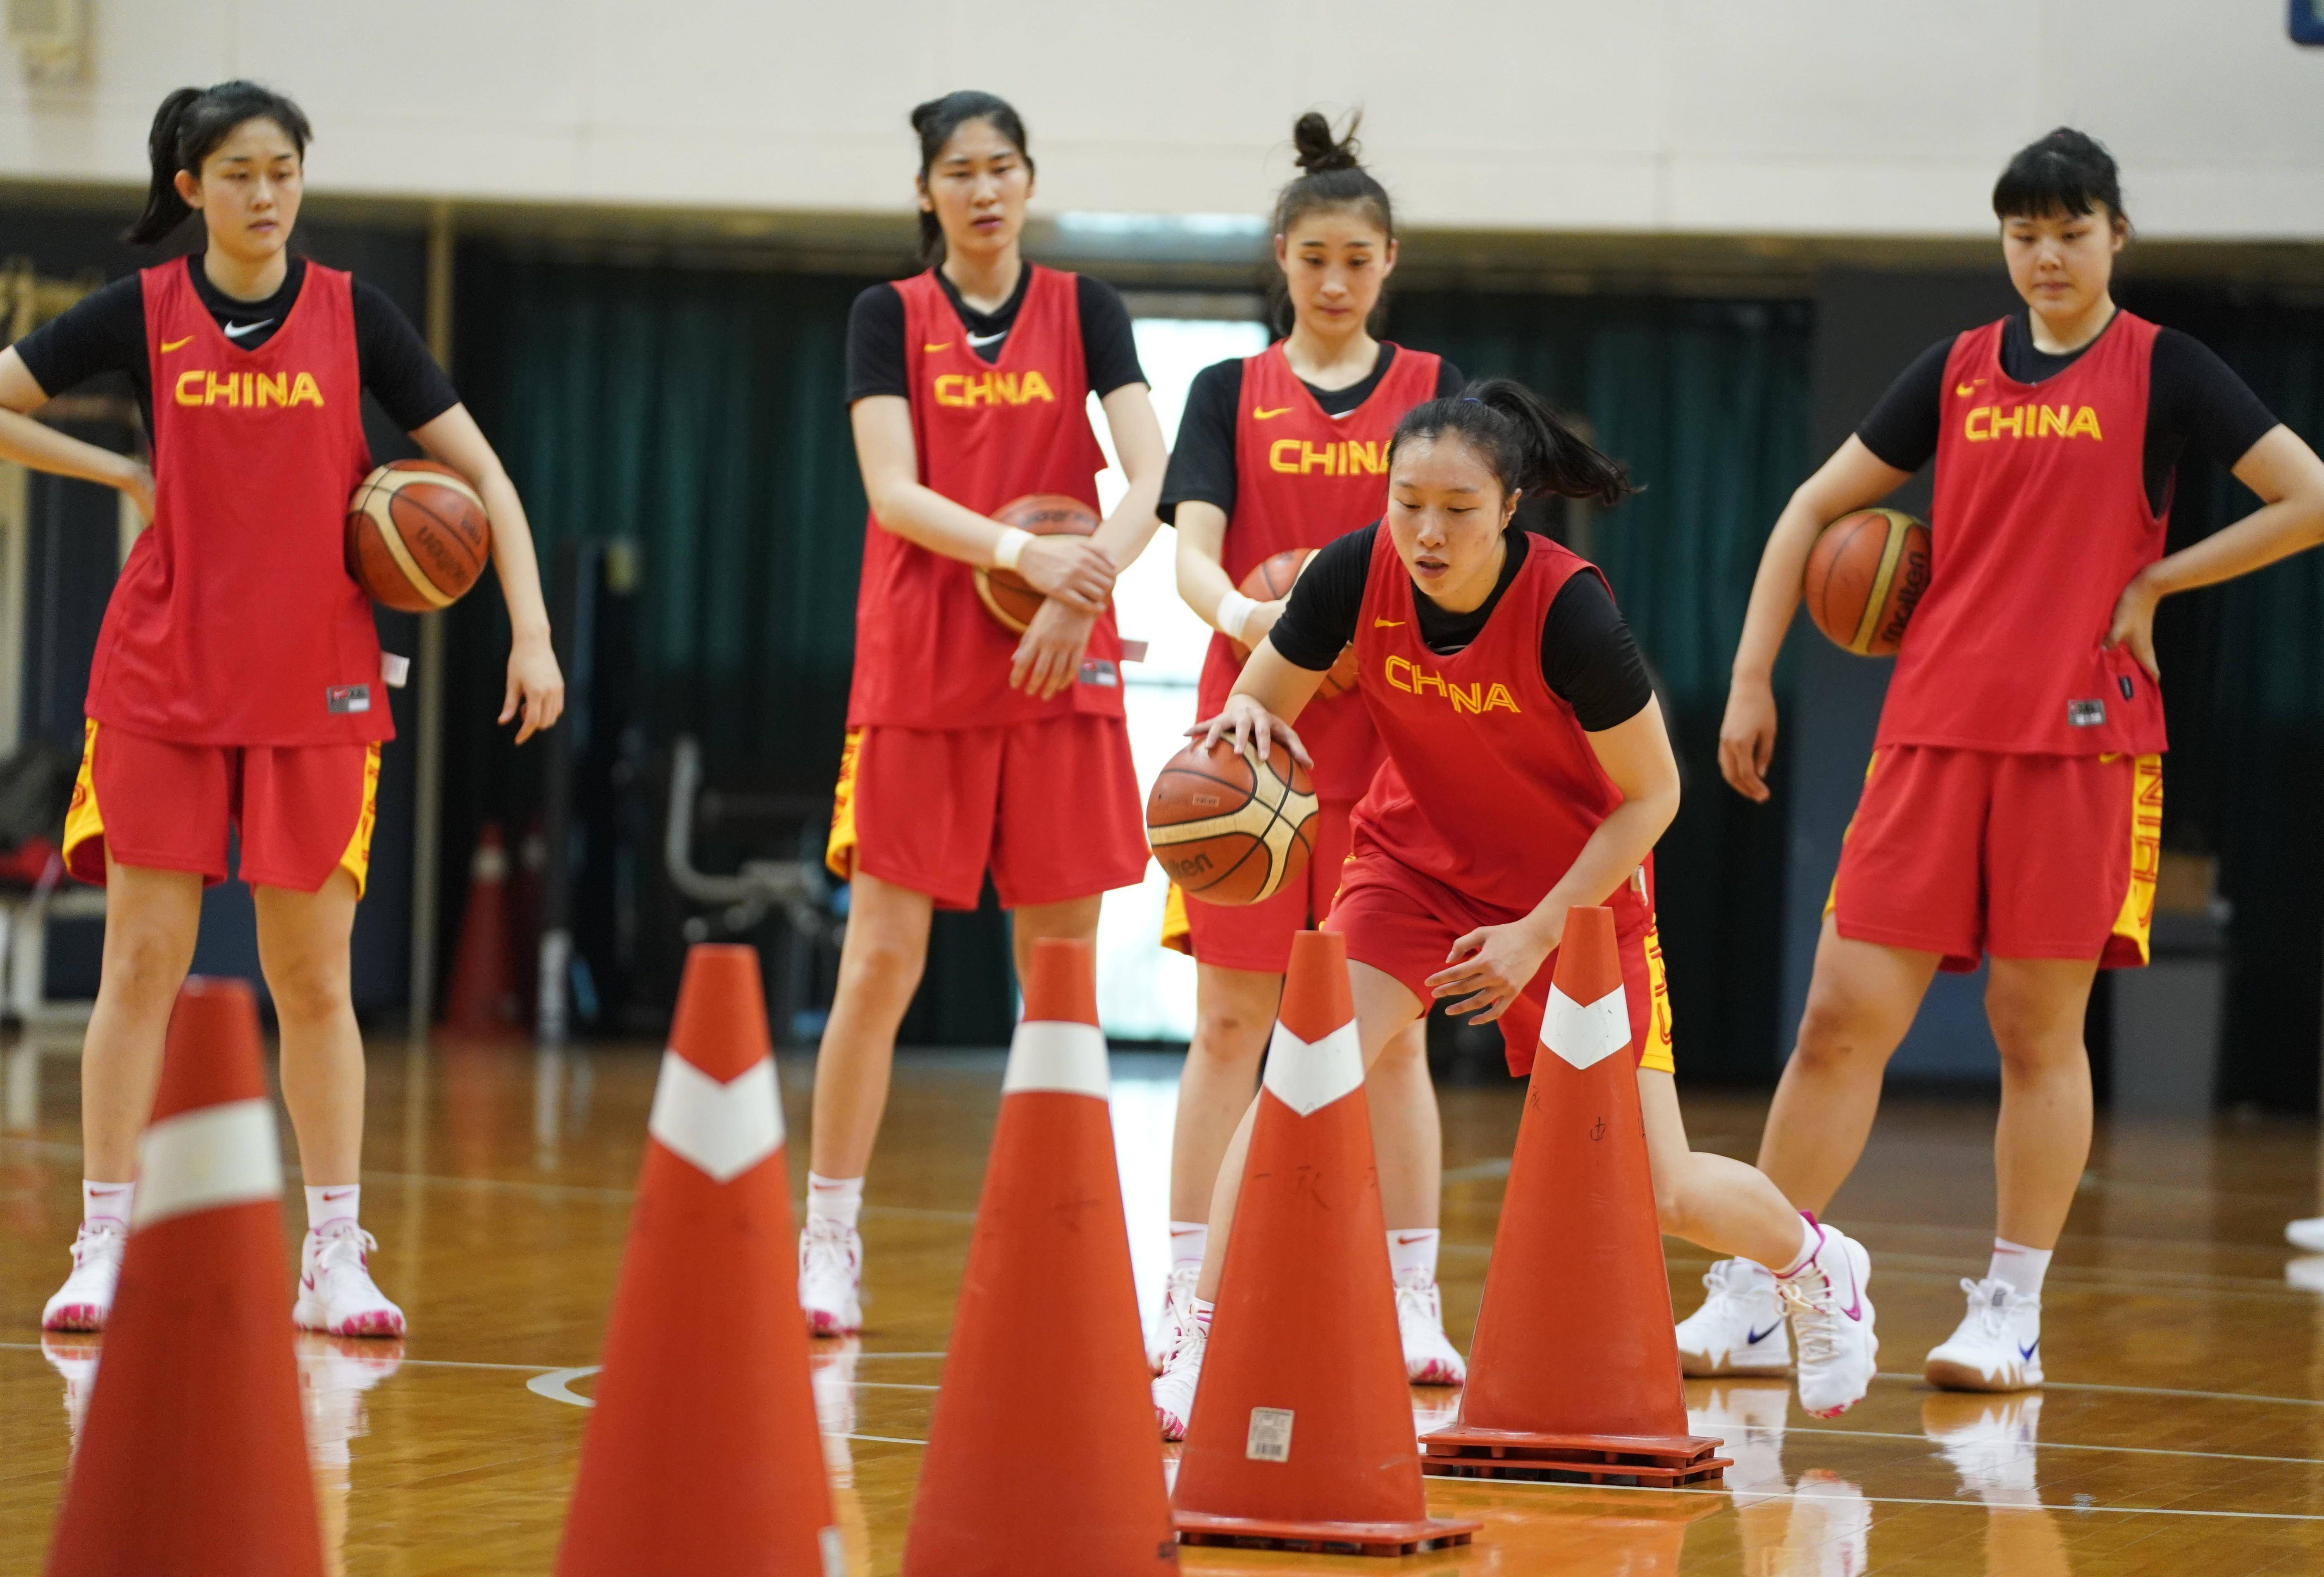 中国女篮或将以"奥运组合队"之名参加全运会